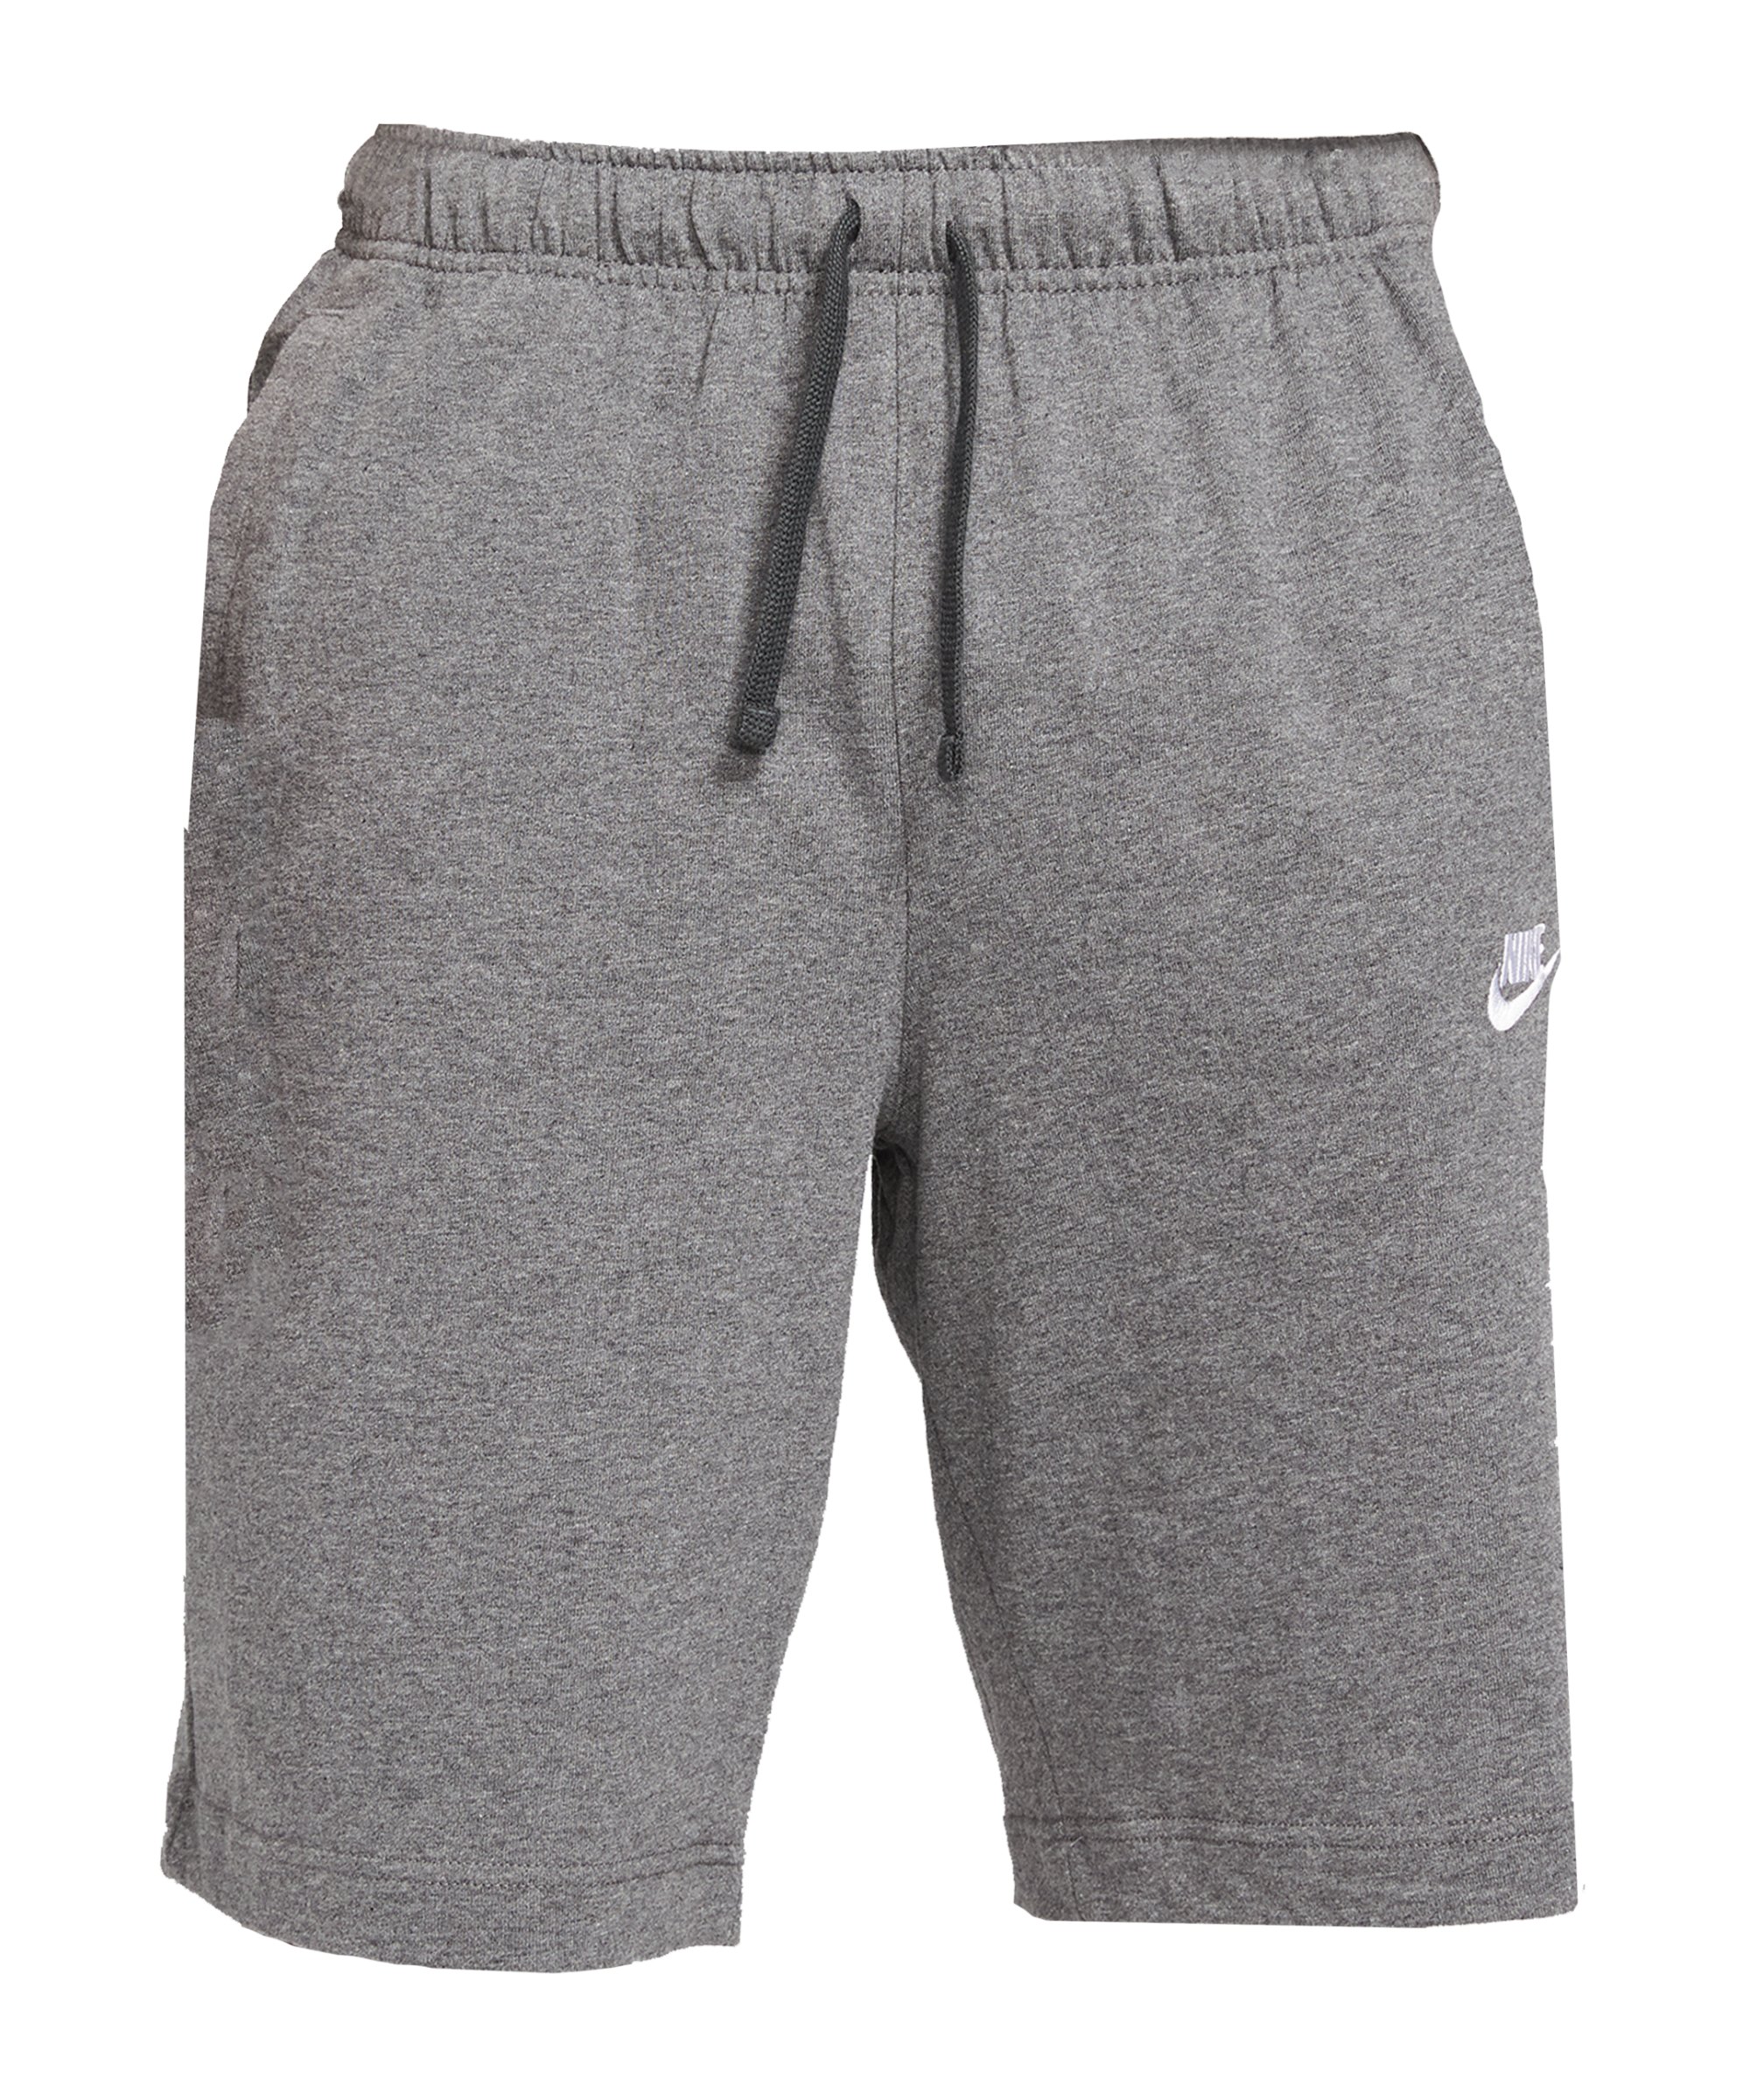 Nike Club Jersey Short Grau F071 - grau